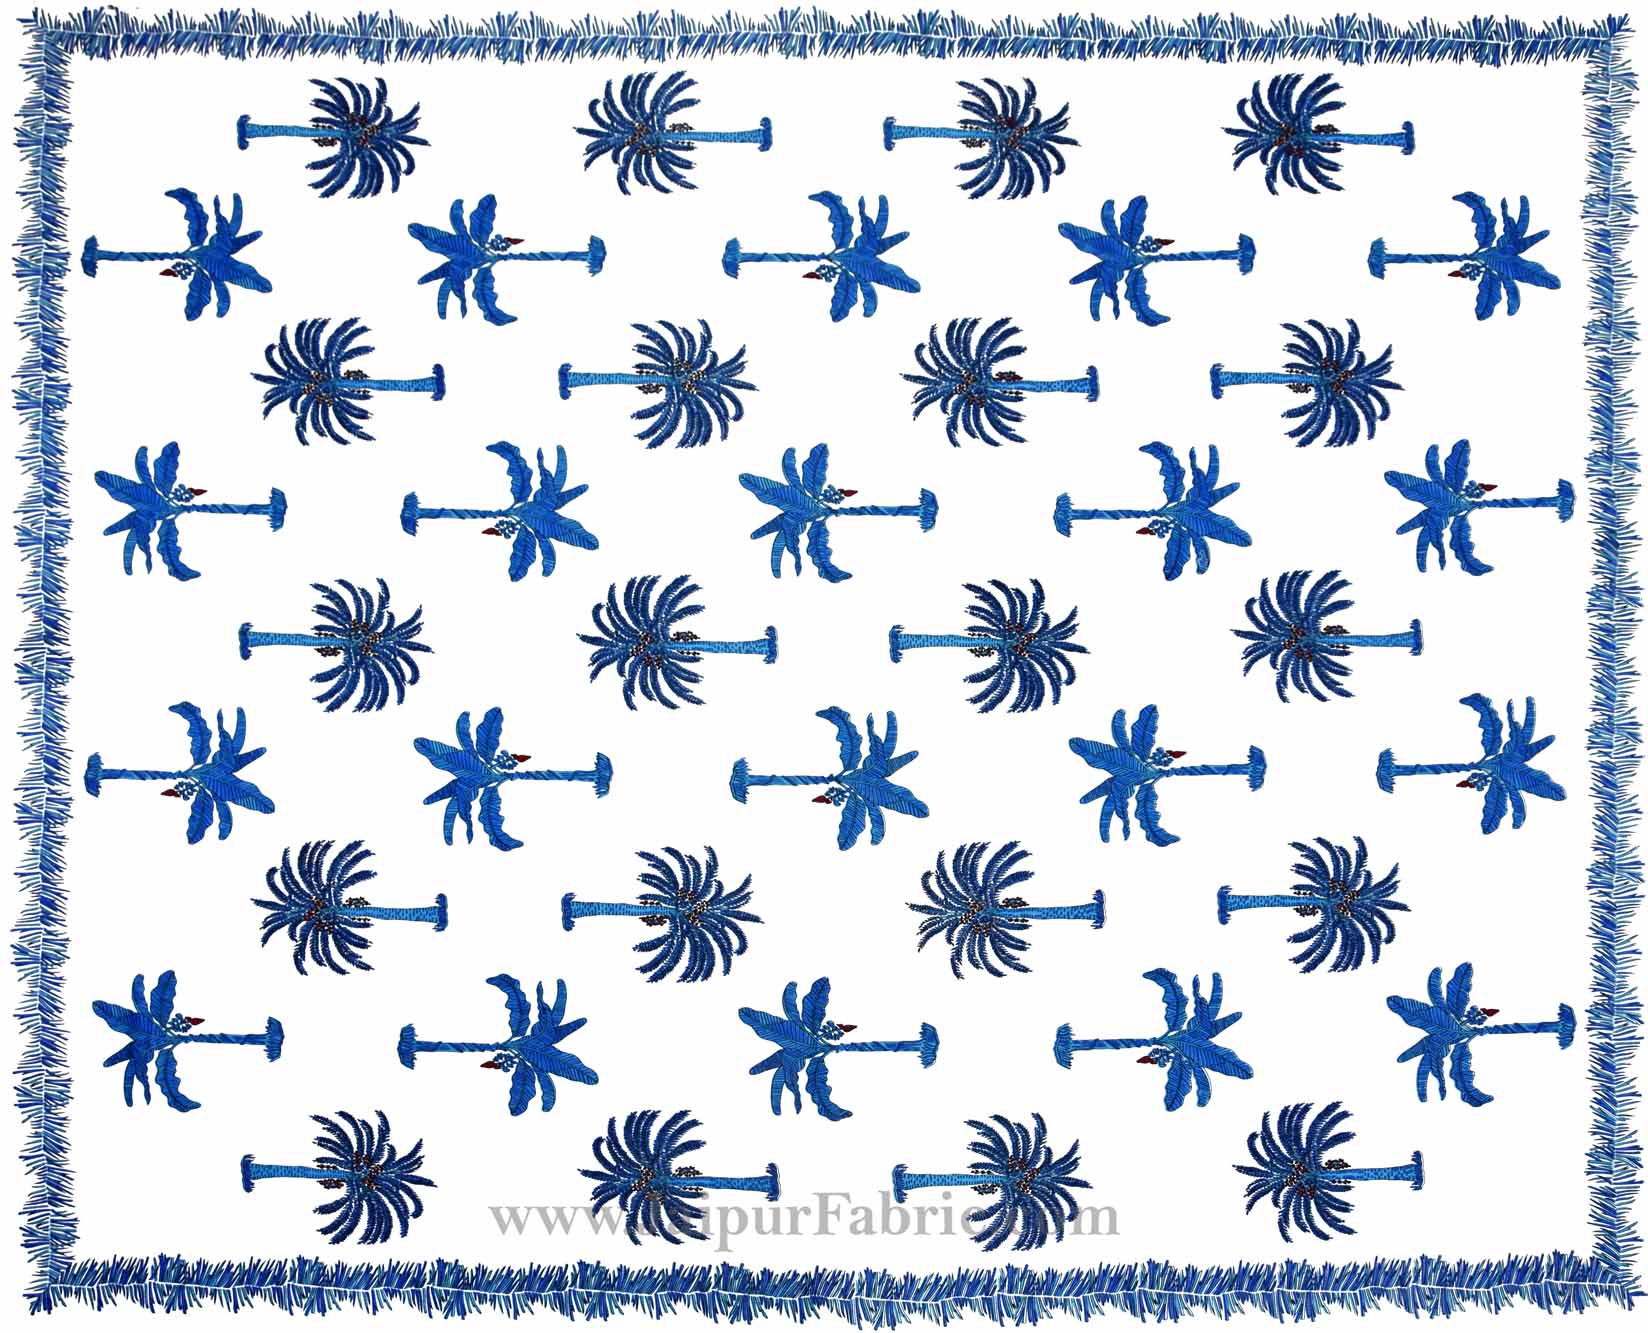 Gorgeous Glaze Cotton Blue Palms Double Bedsheet